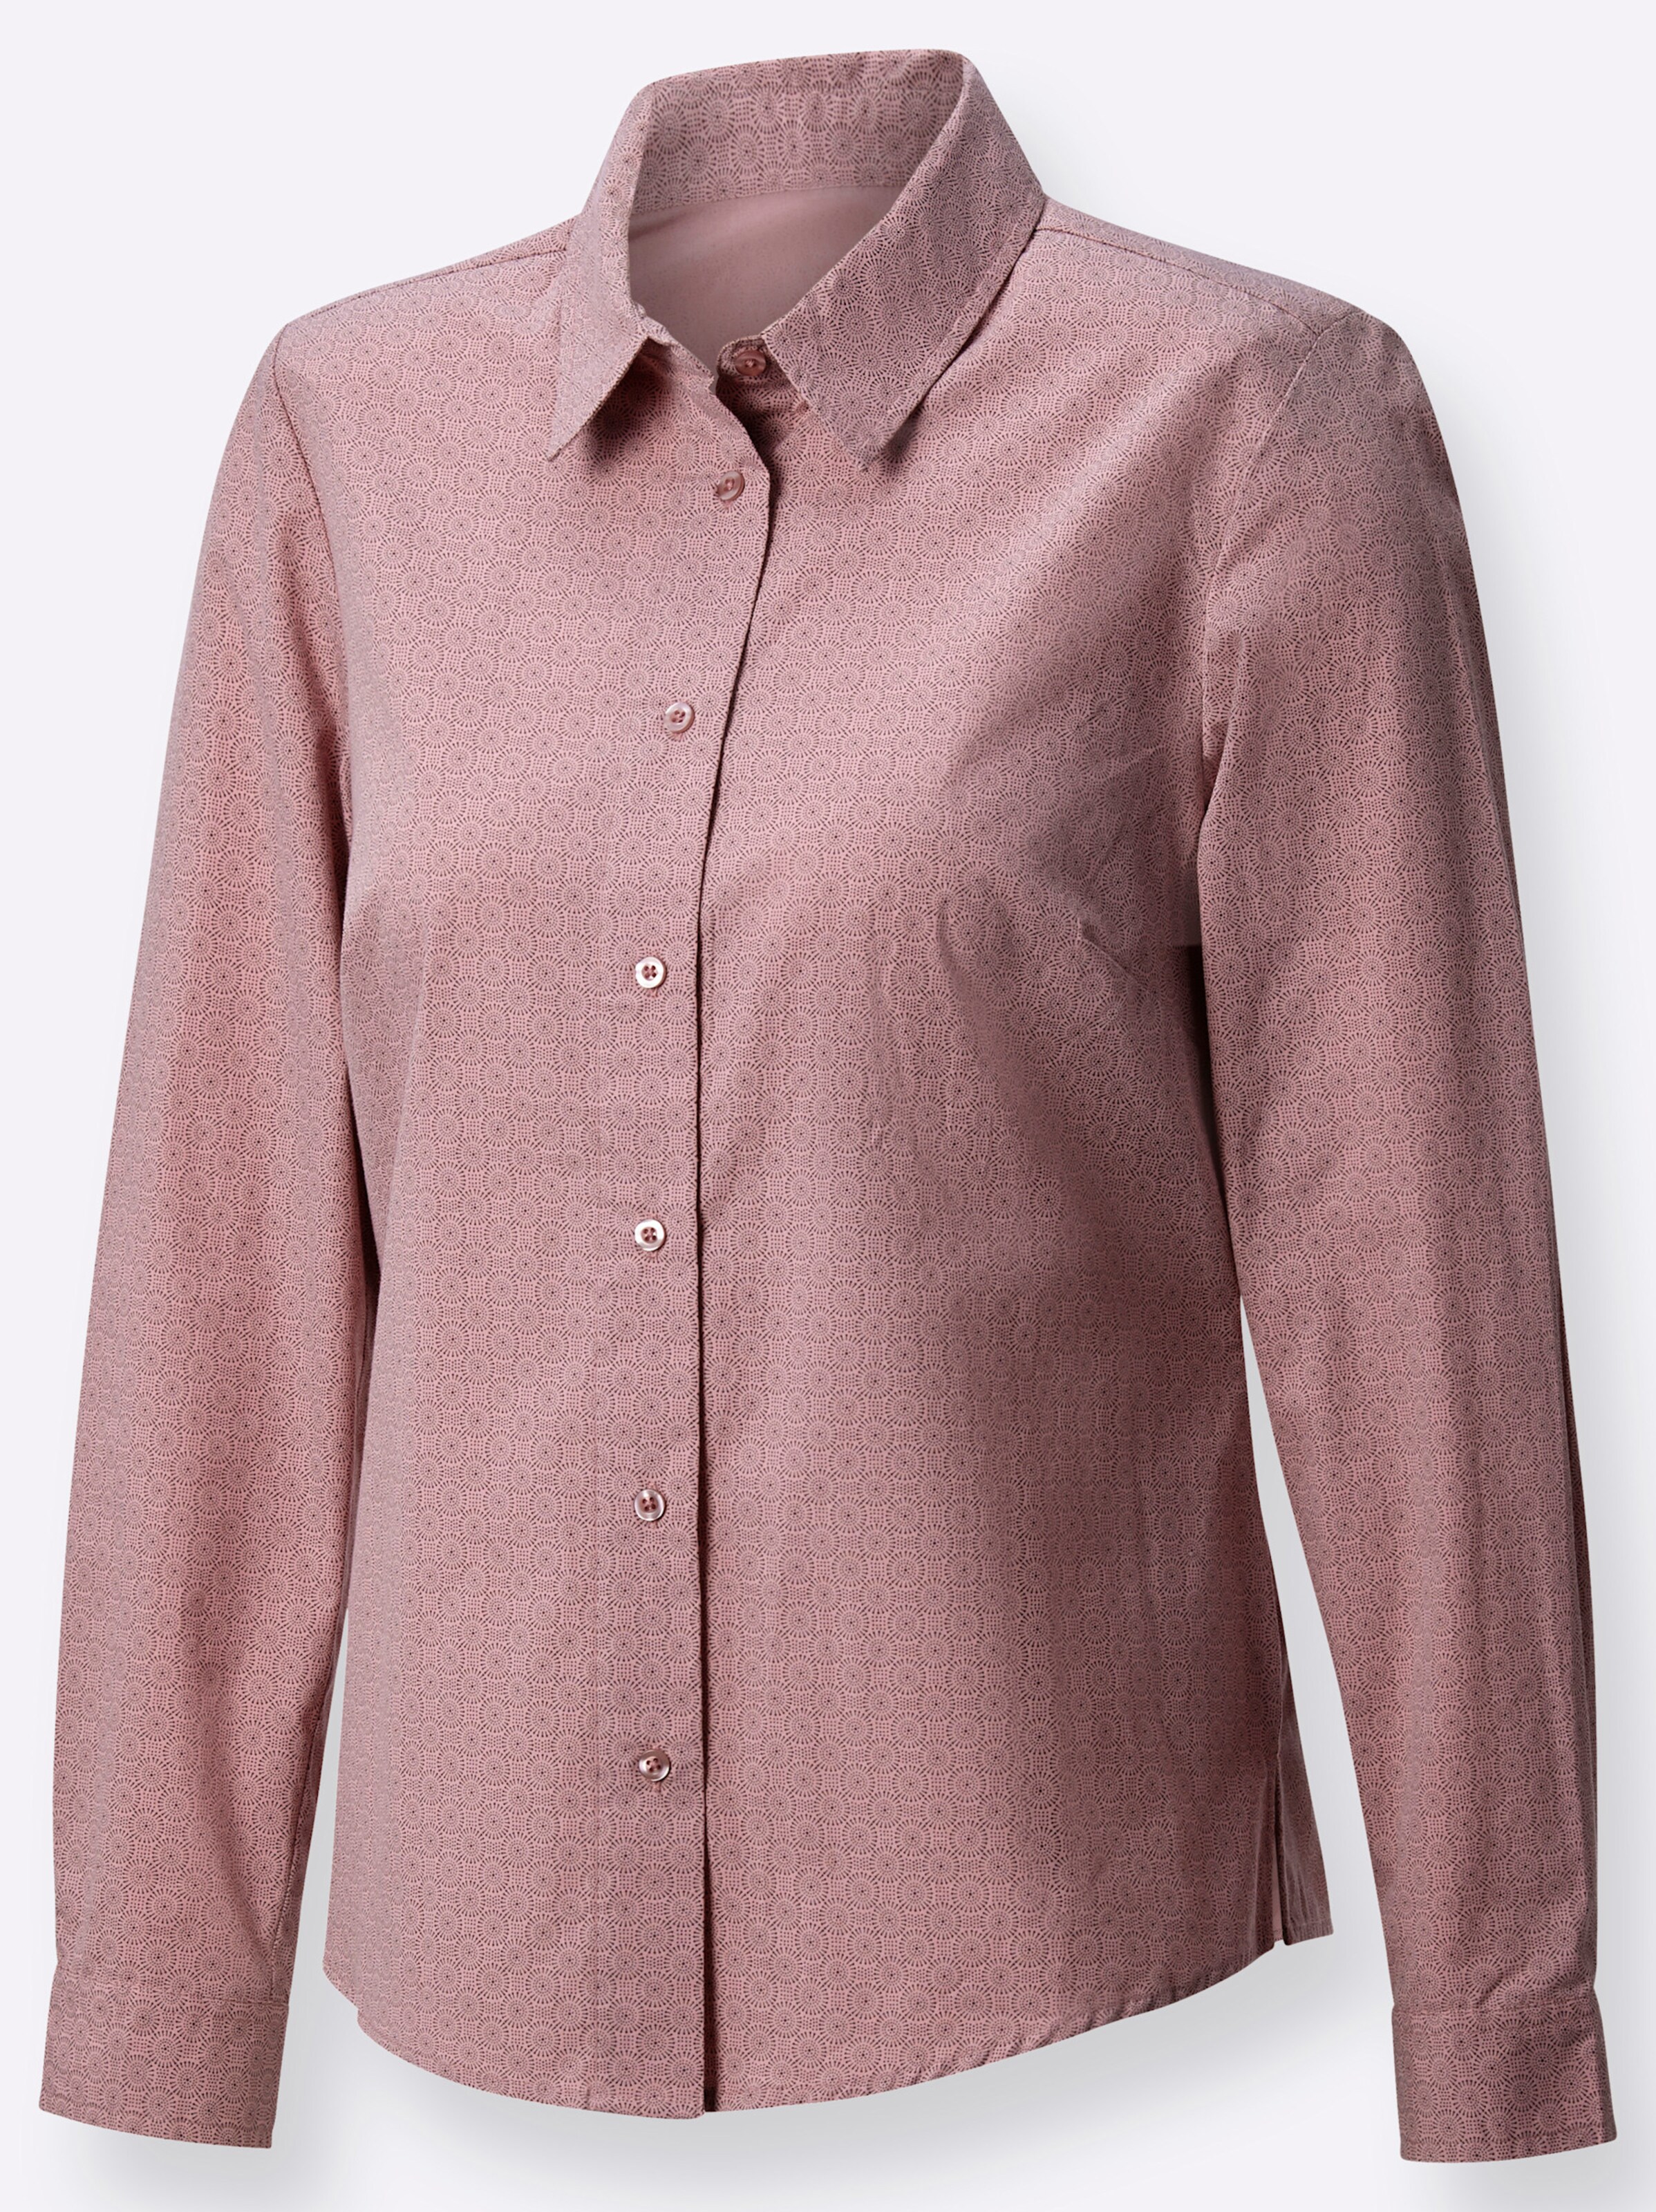 Witt Weiden Damen Hemdbluse rosé grau gemustert  - Onlineshop Witt Weiden